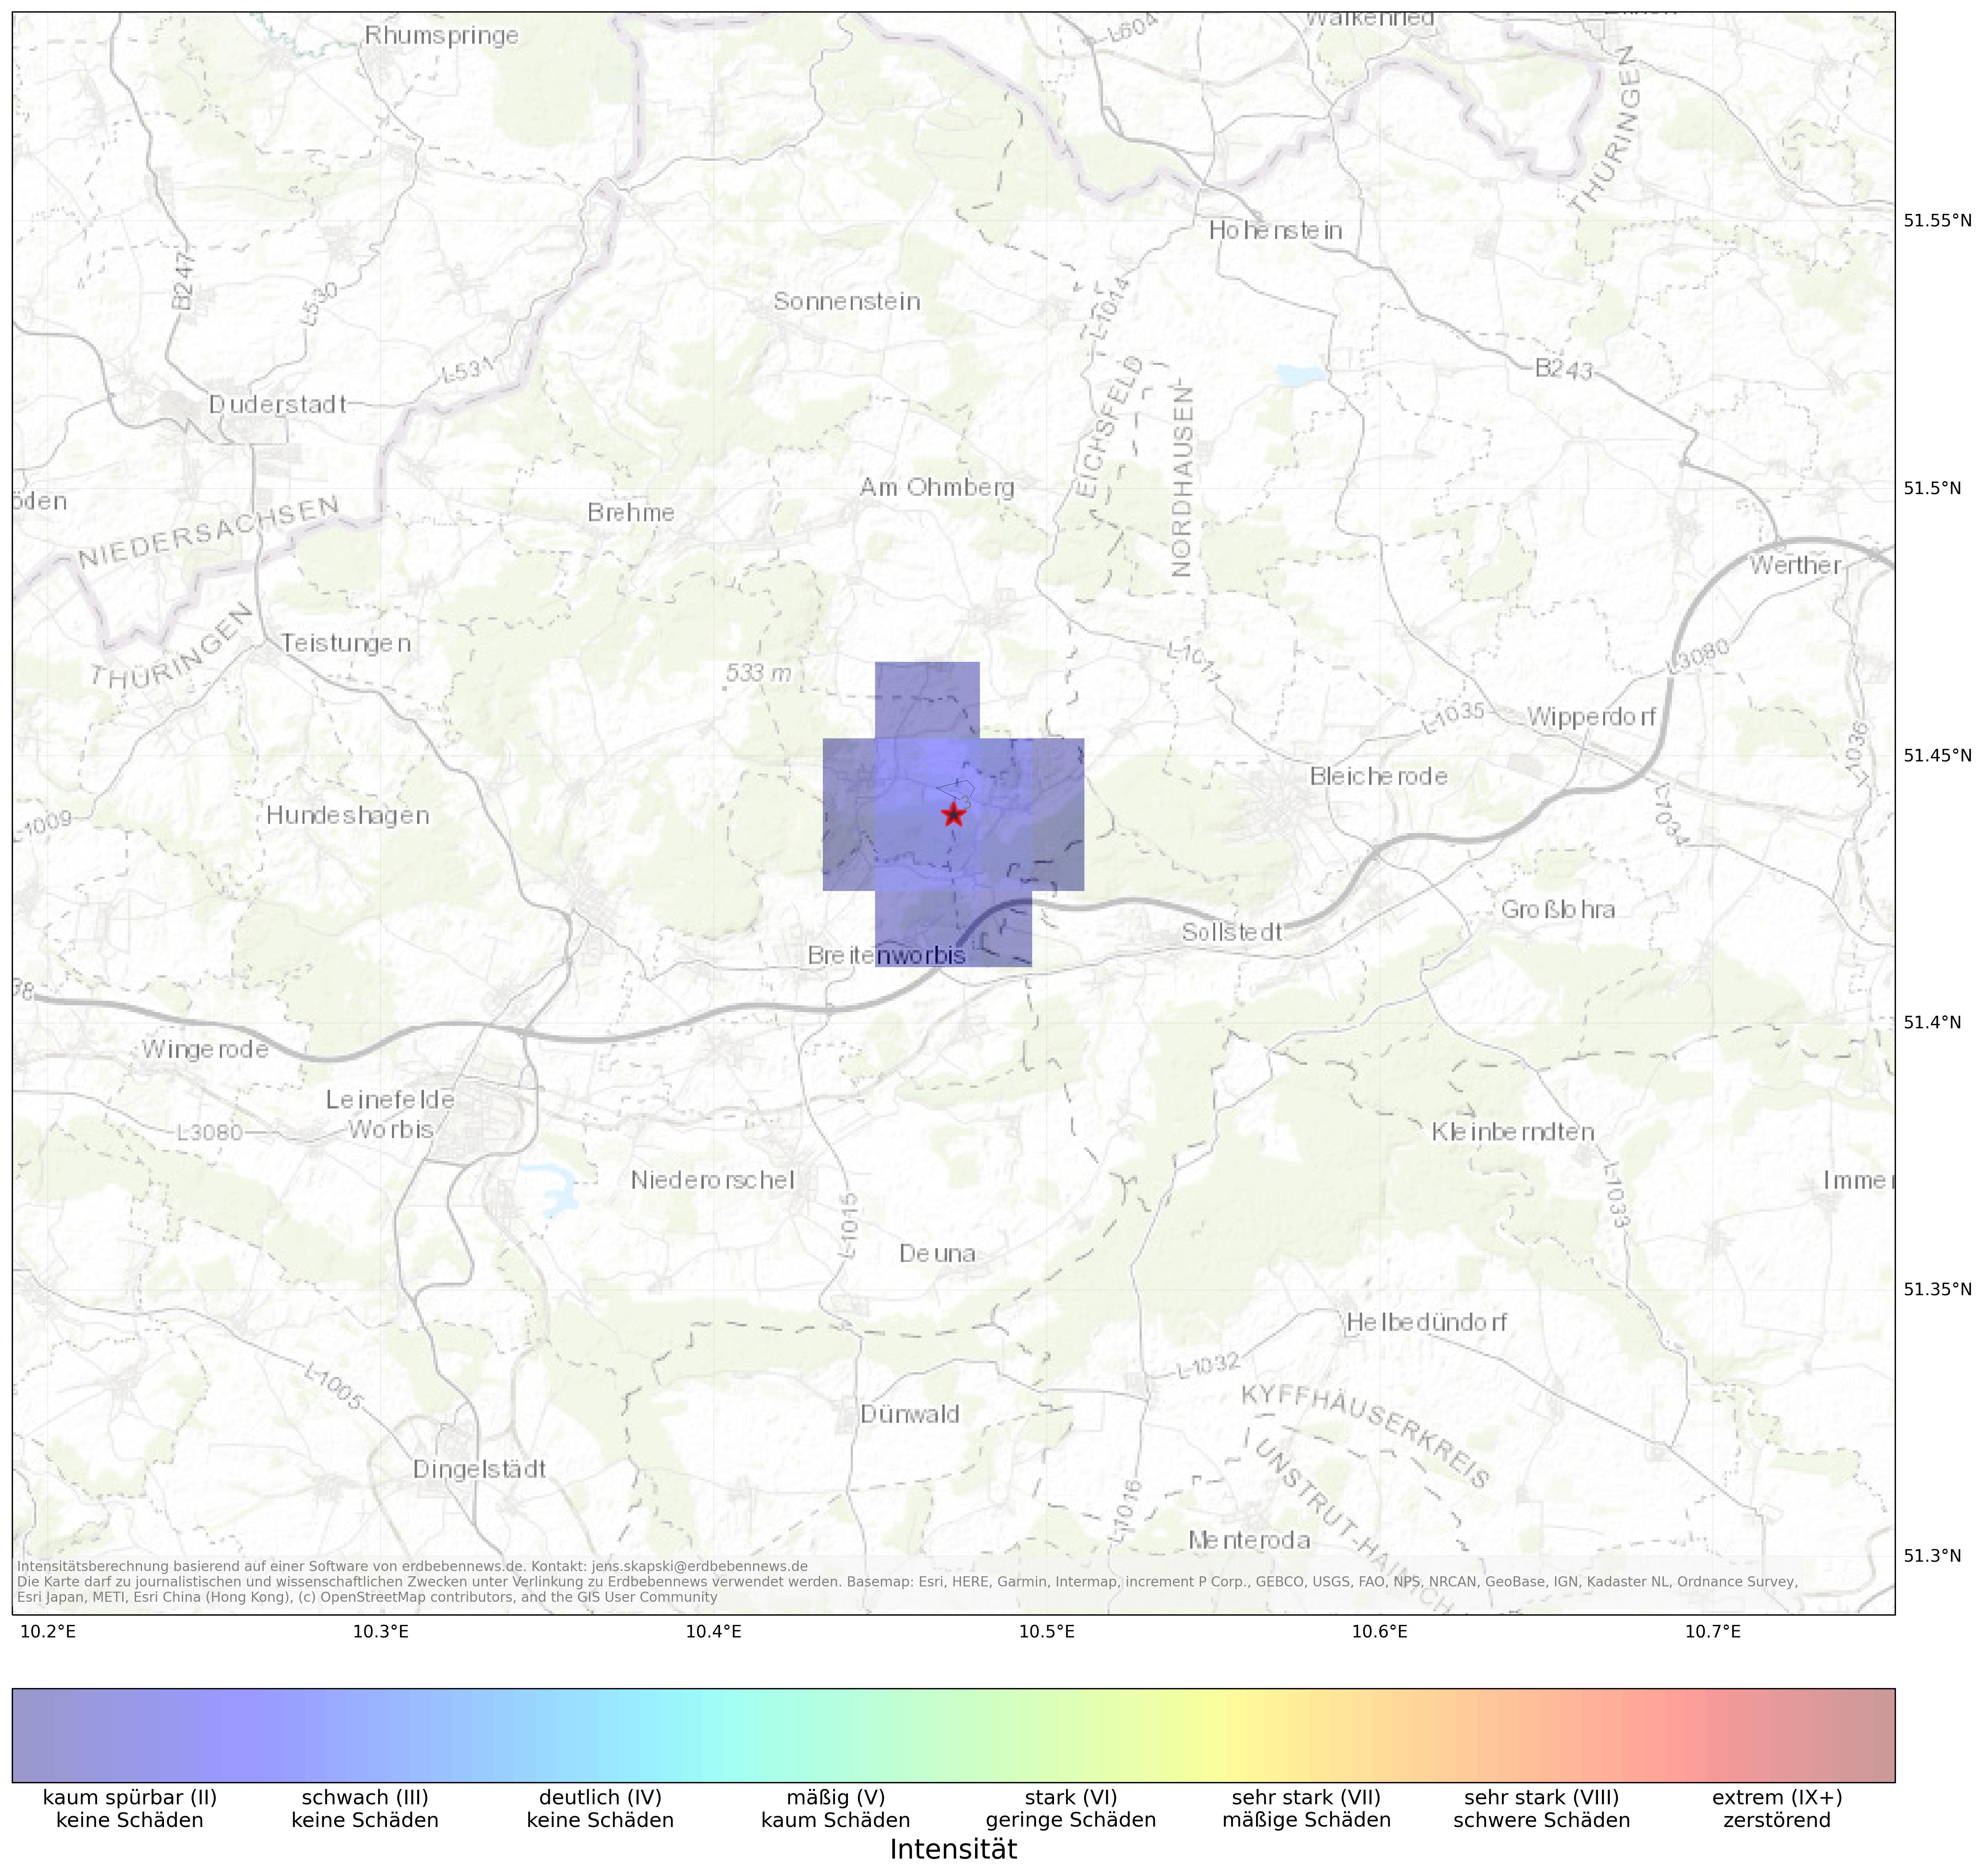 Berechnete Intensität (ShakeMap) des Erdbebens der Stärke 1.4 am 01. March, 23:23 in Deutschland